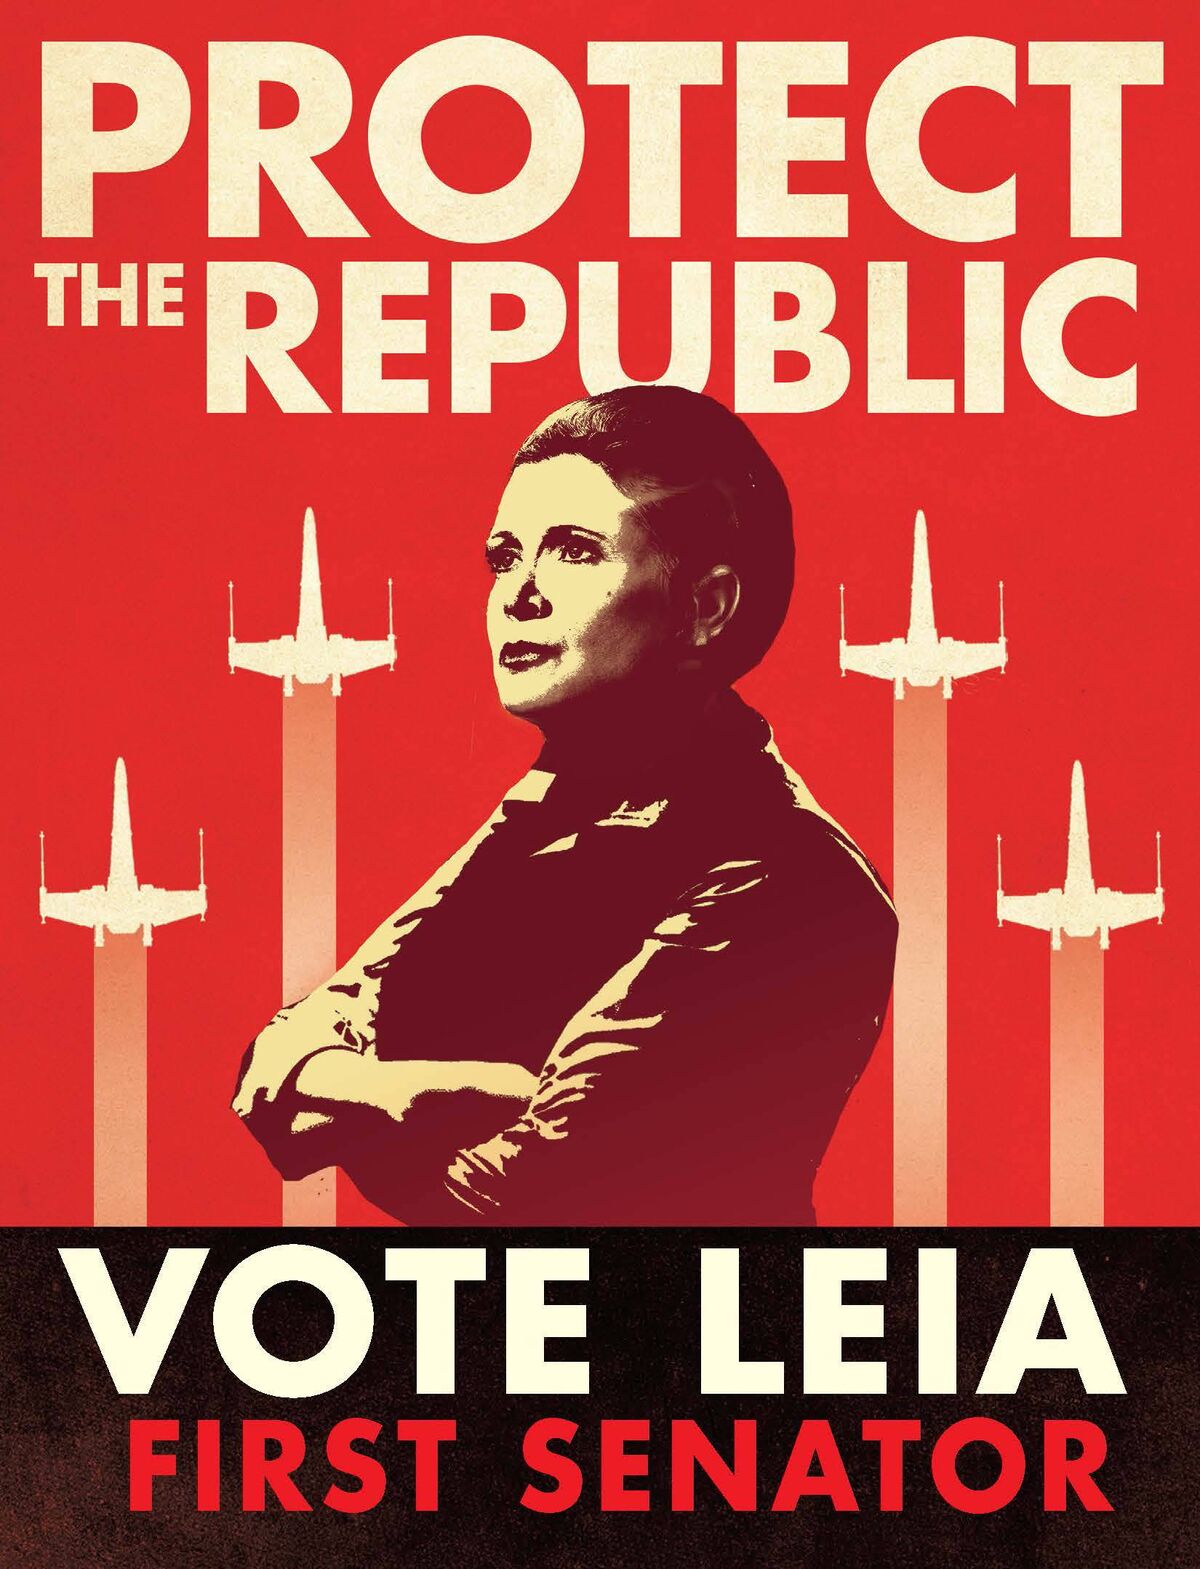 Star Wars propaganda poster Protect the Republic